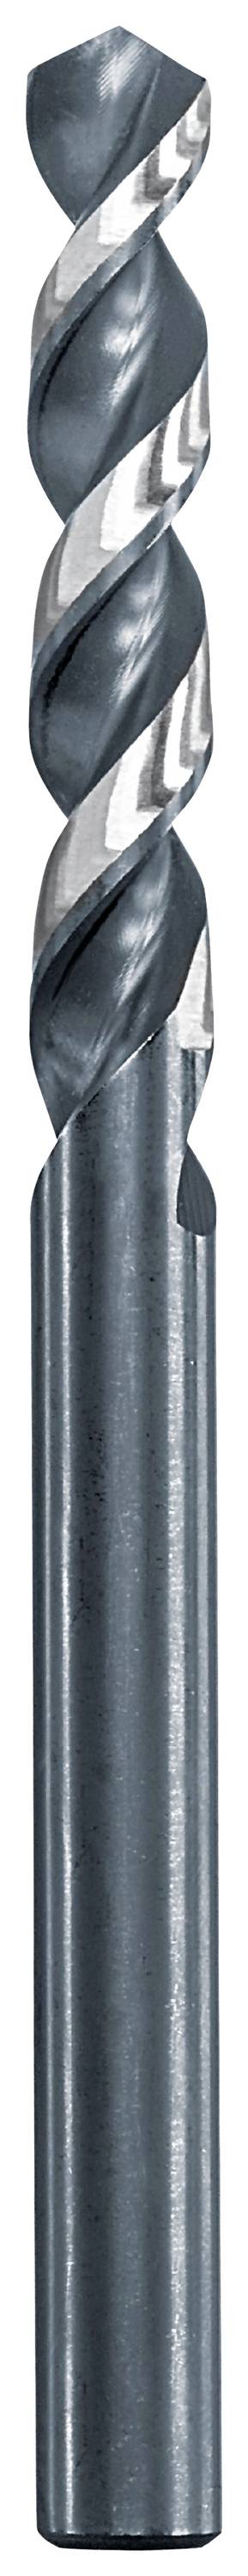 KWB 258730 Metall-Spiralbohrer 13 mm Gesamtlänge 151 mm 1 St.